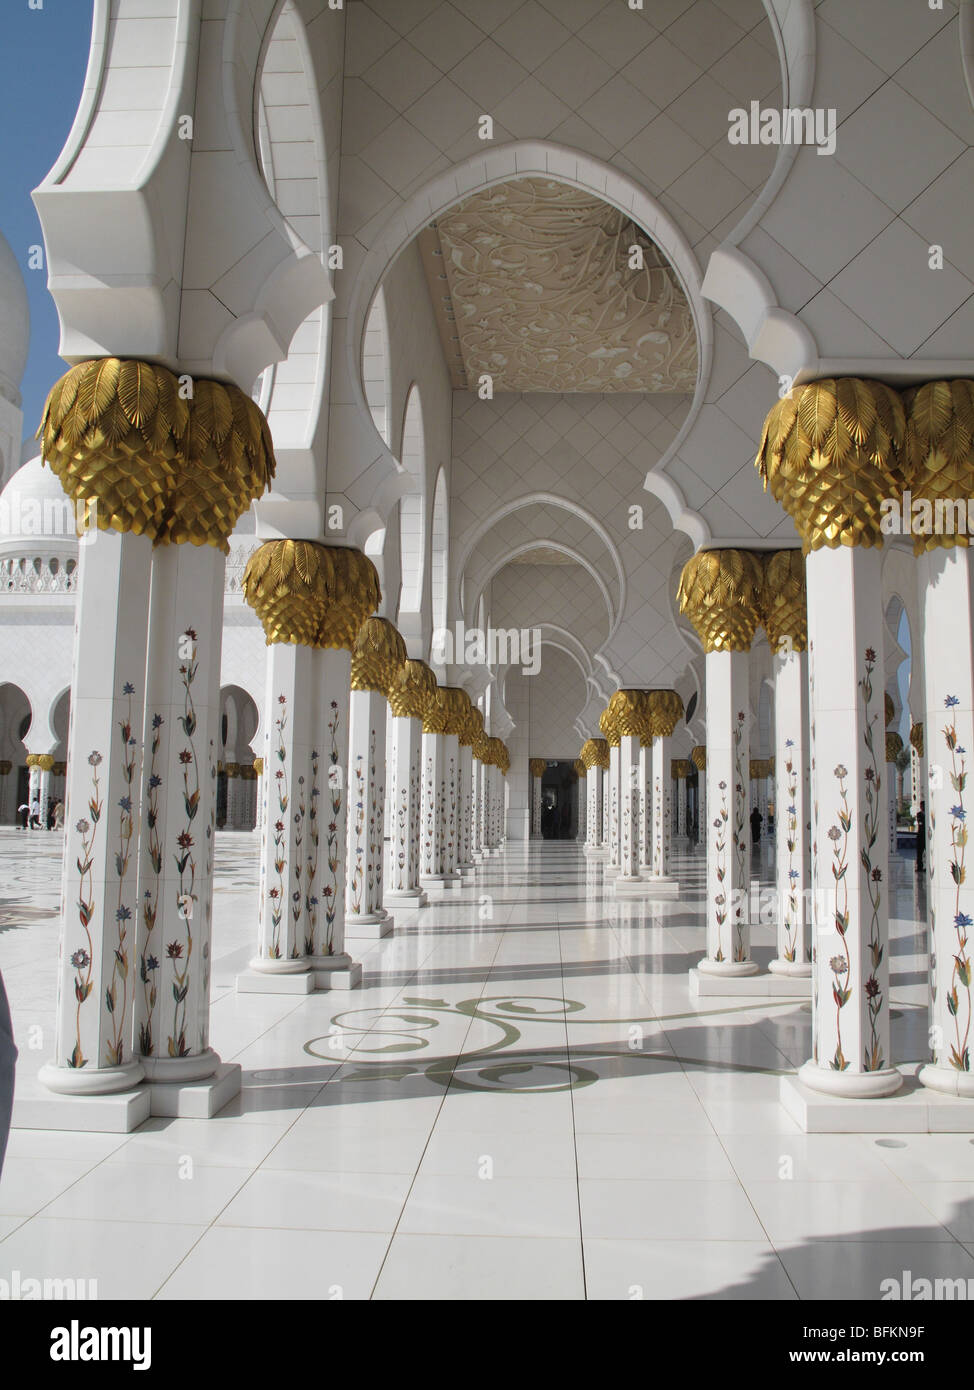 Pasarela de columnas y arcos de mármol blanco y al Jeque Zayed Bin Sultan Al Nahyan, la Mezquita Abu Dhabi Foto de stock